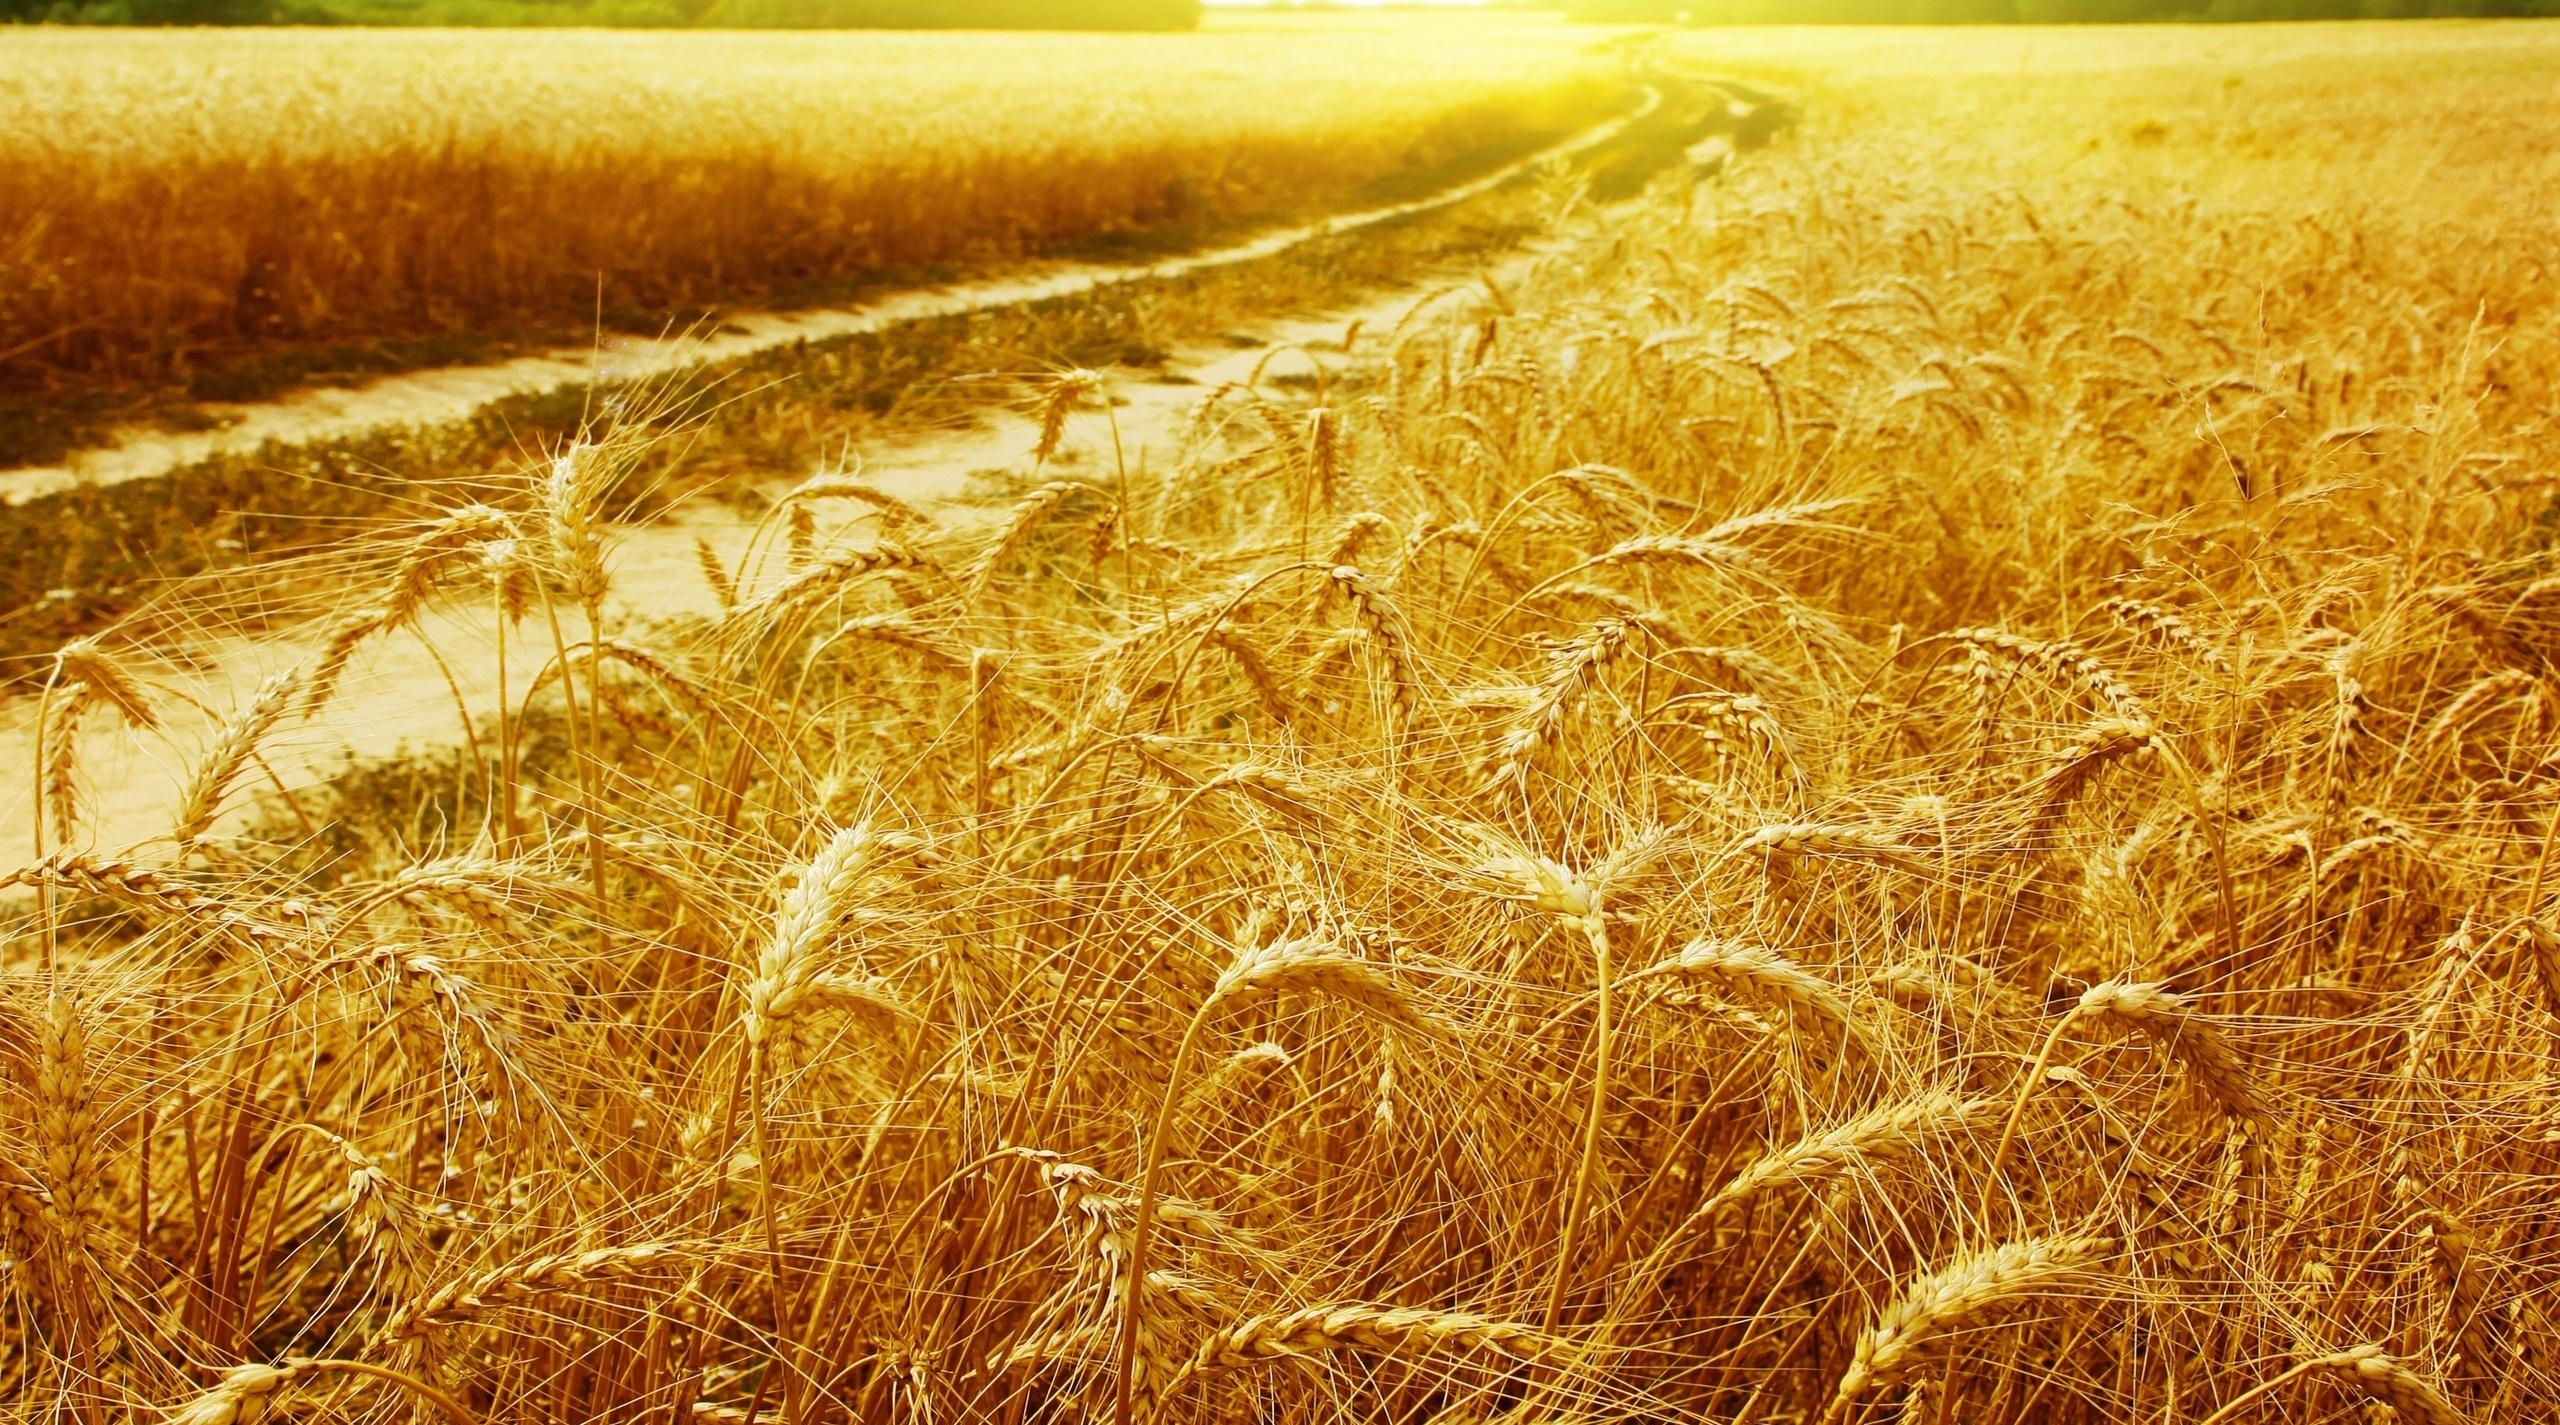 добыча зерна как предмет государственной монополии